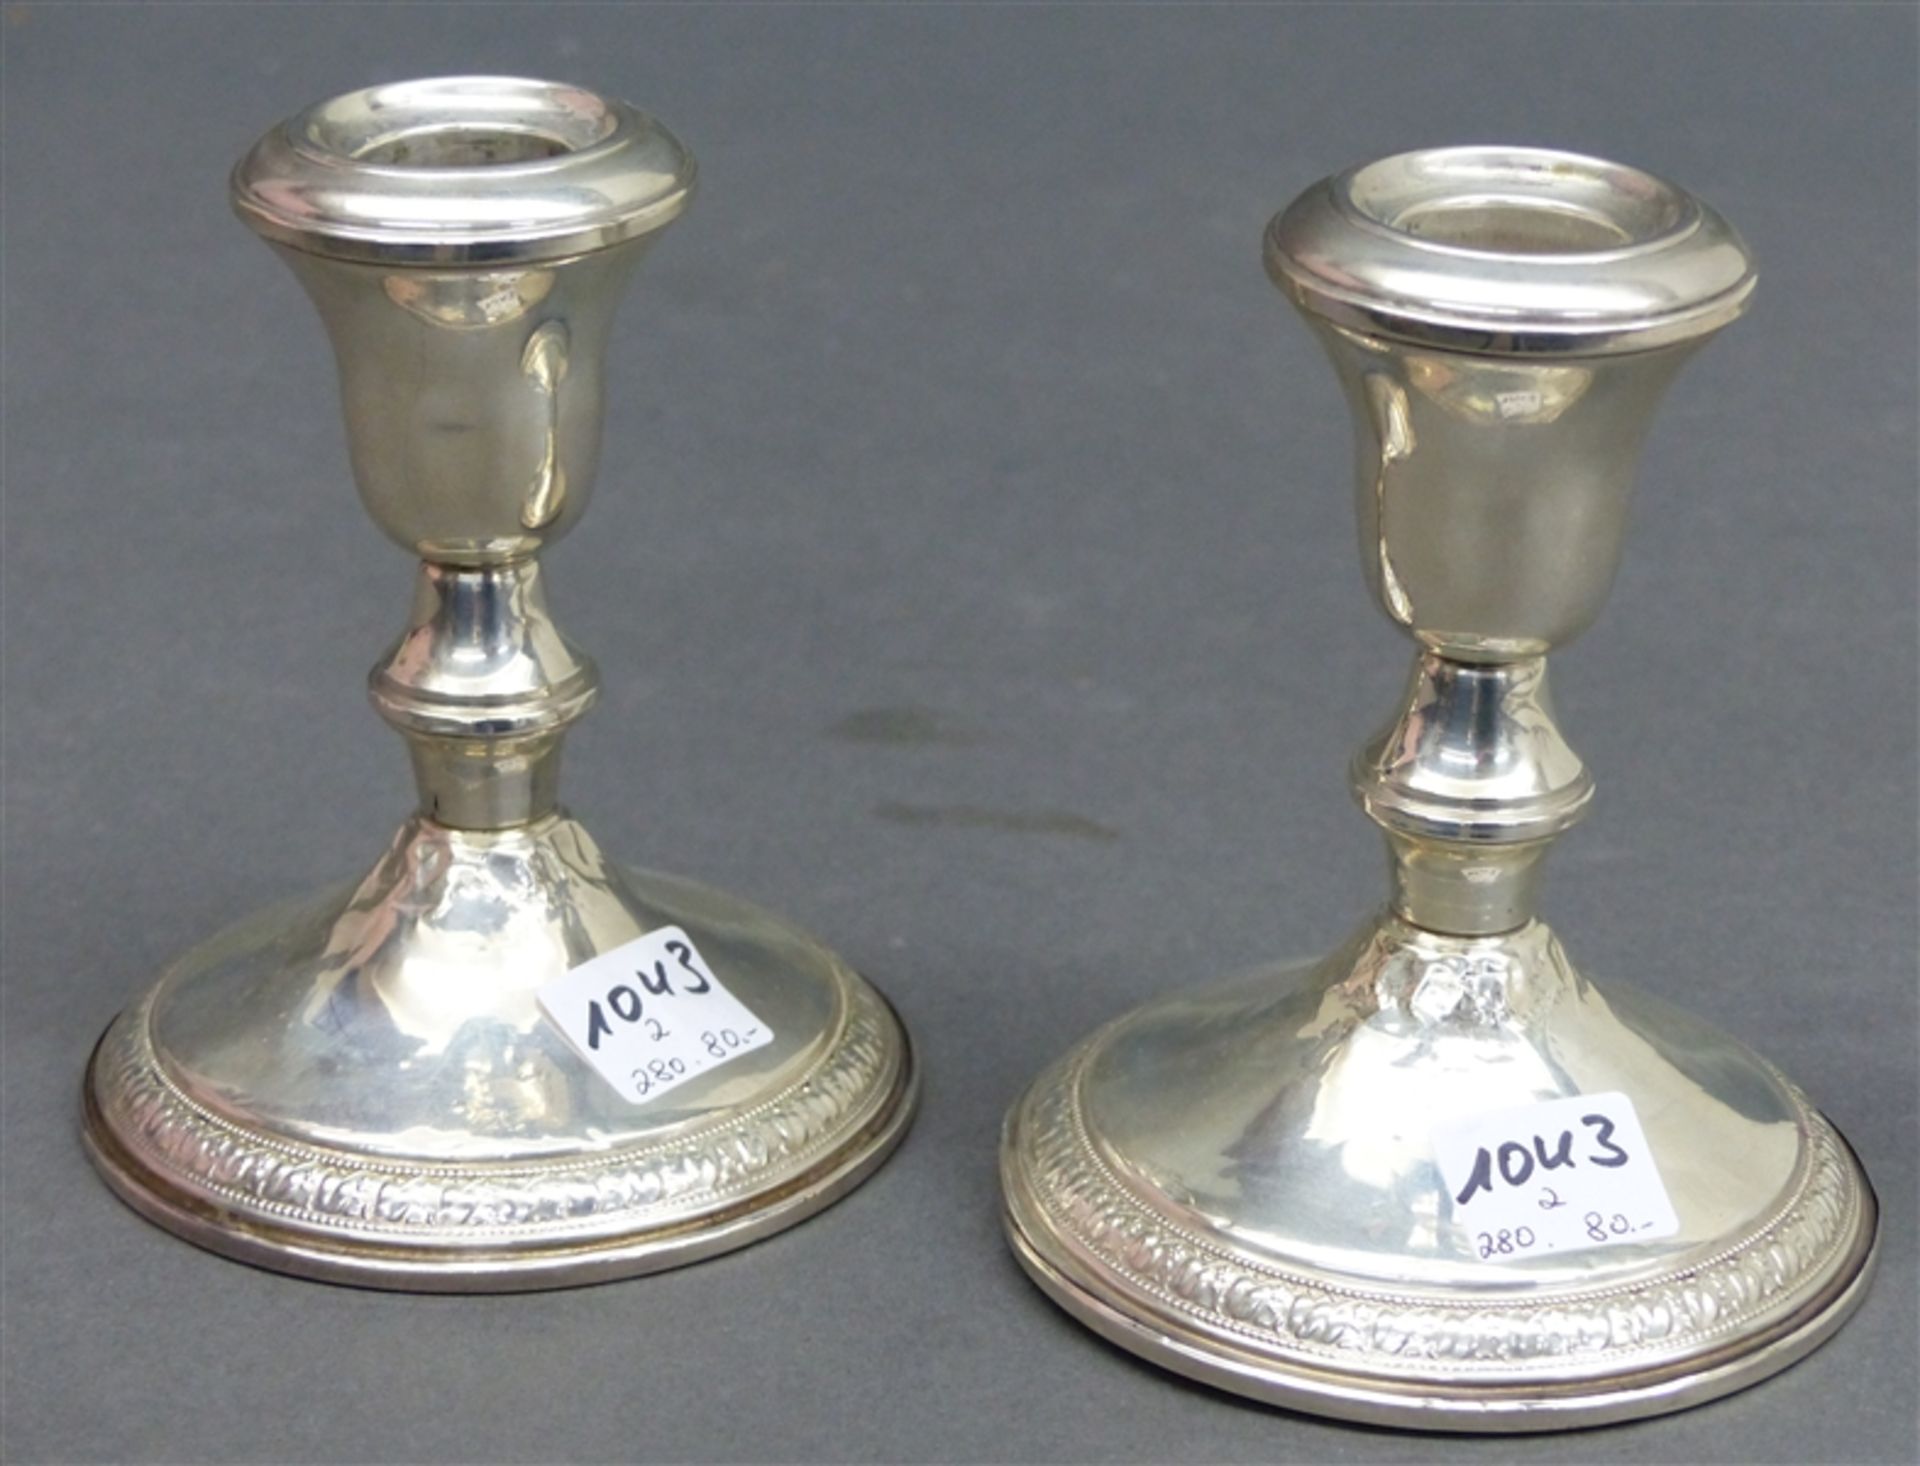 Paar Kerzenleuchter 925 Sterlingsilber, Reliefrand, gefüllter Fuß, beschädigt, ca. 662 g schwer, h